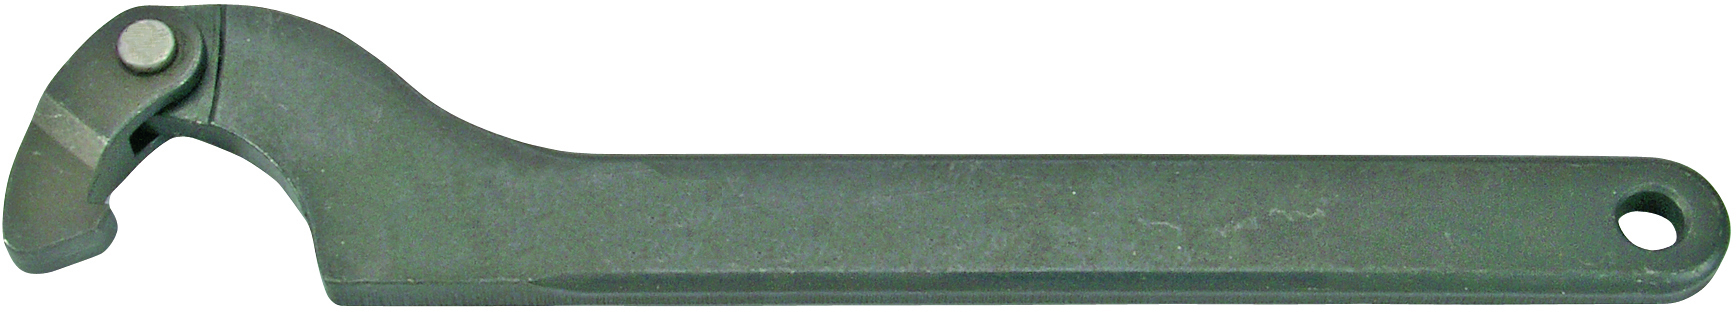 BGS 1226 Gelenk Hakenschlüssel 35-60mm Nutmutternschlüssel Zapfenschlüssel Kreuz